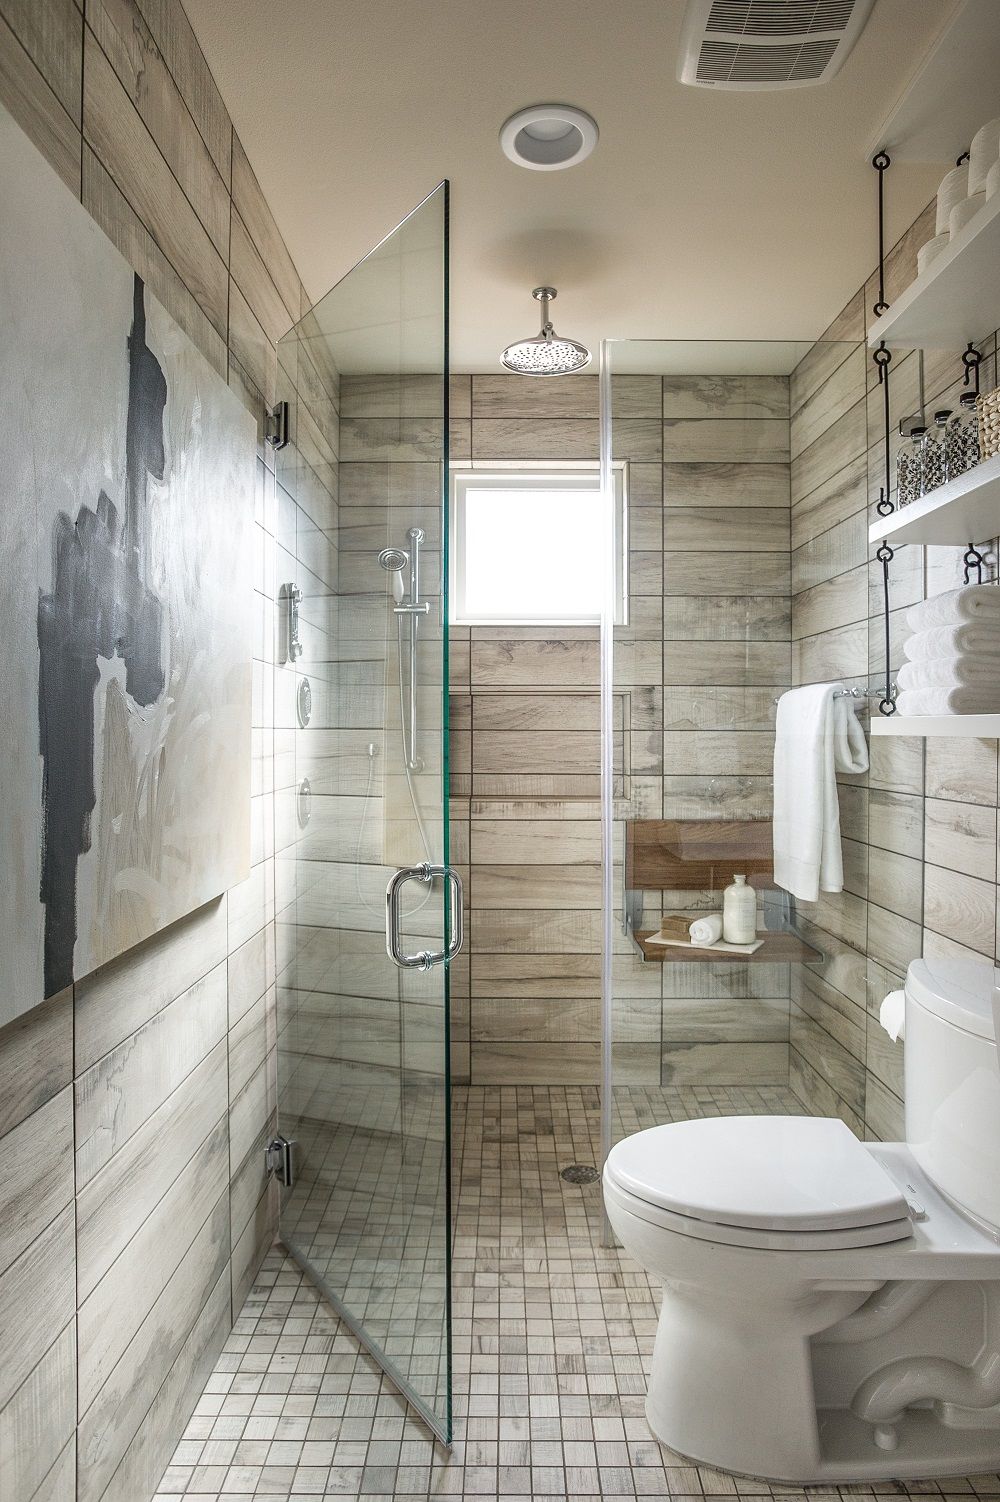 Thiết kế phòng tắm nhỏ đẹp không chỉ thể hiện sự tiện nghi và đẳng cấp mà còn làm cho không gian phòng tắm trở nên rộng rãi hơn. Với màu sắc và kiểu dáng phù hợp, bạn có thể tạo ra một không gian tắm nhỏ đẹp và tiện nghi hơn.